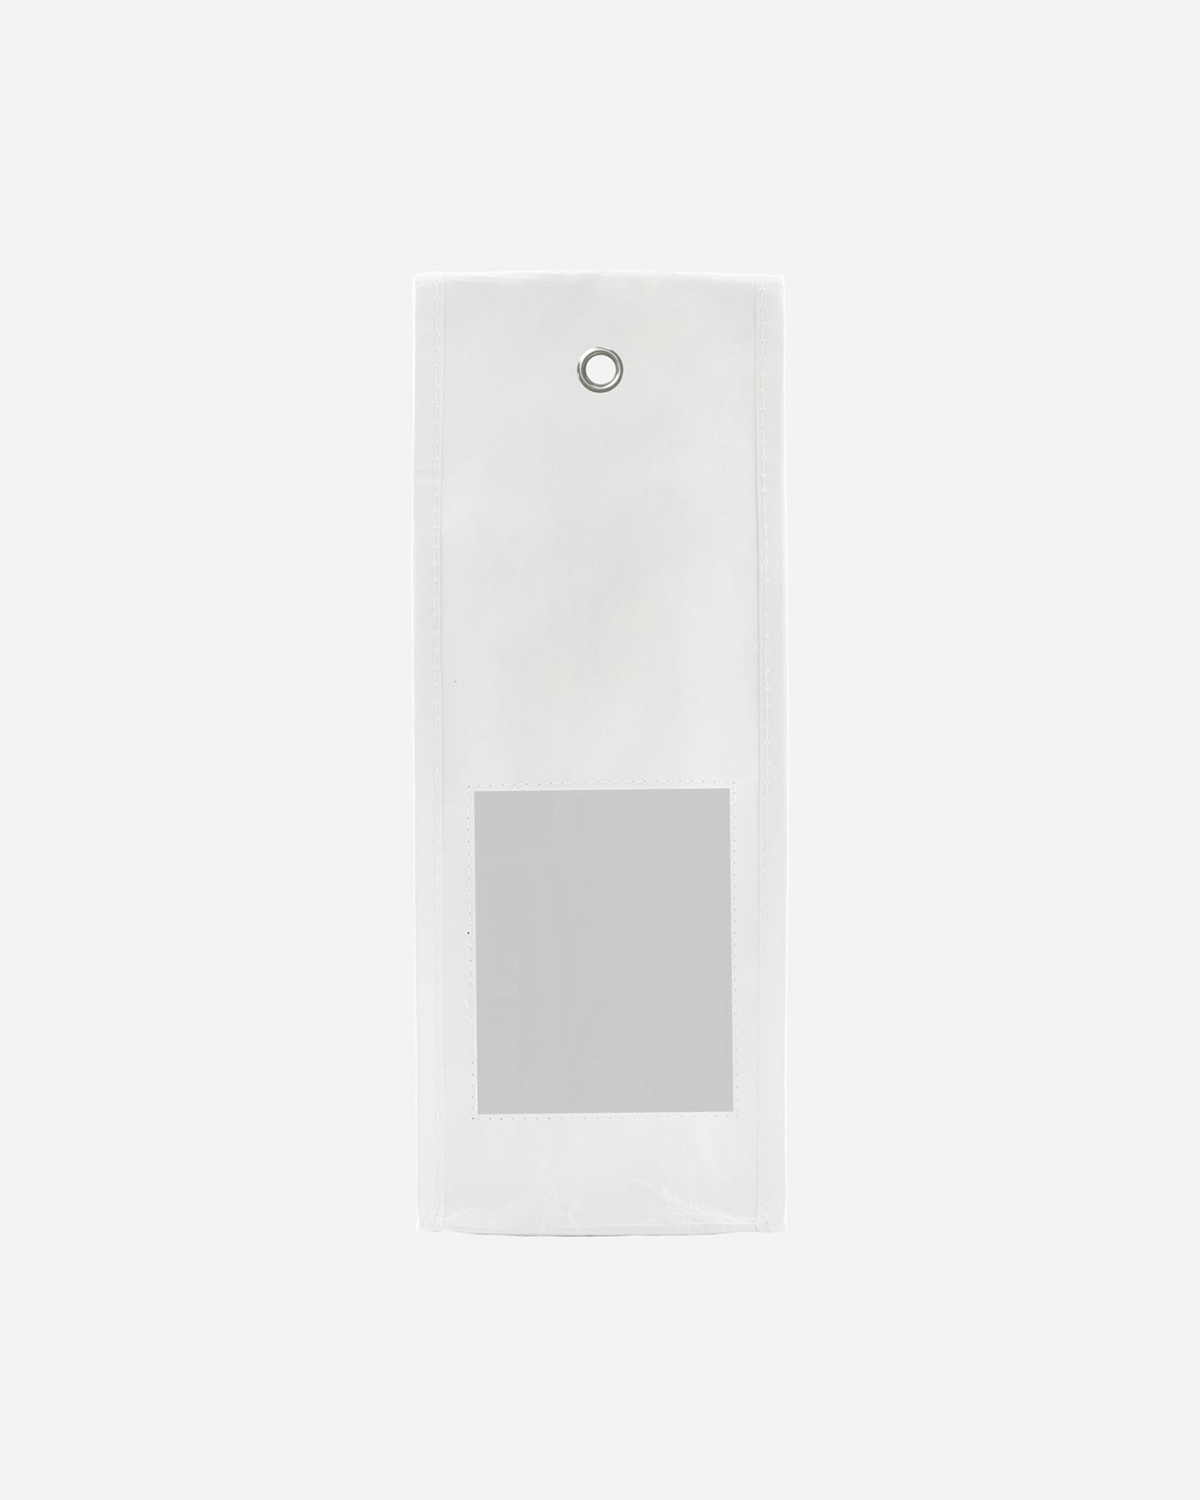 Giftbag w. Window, White